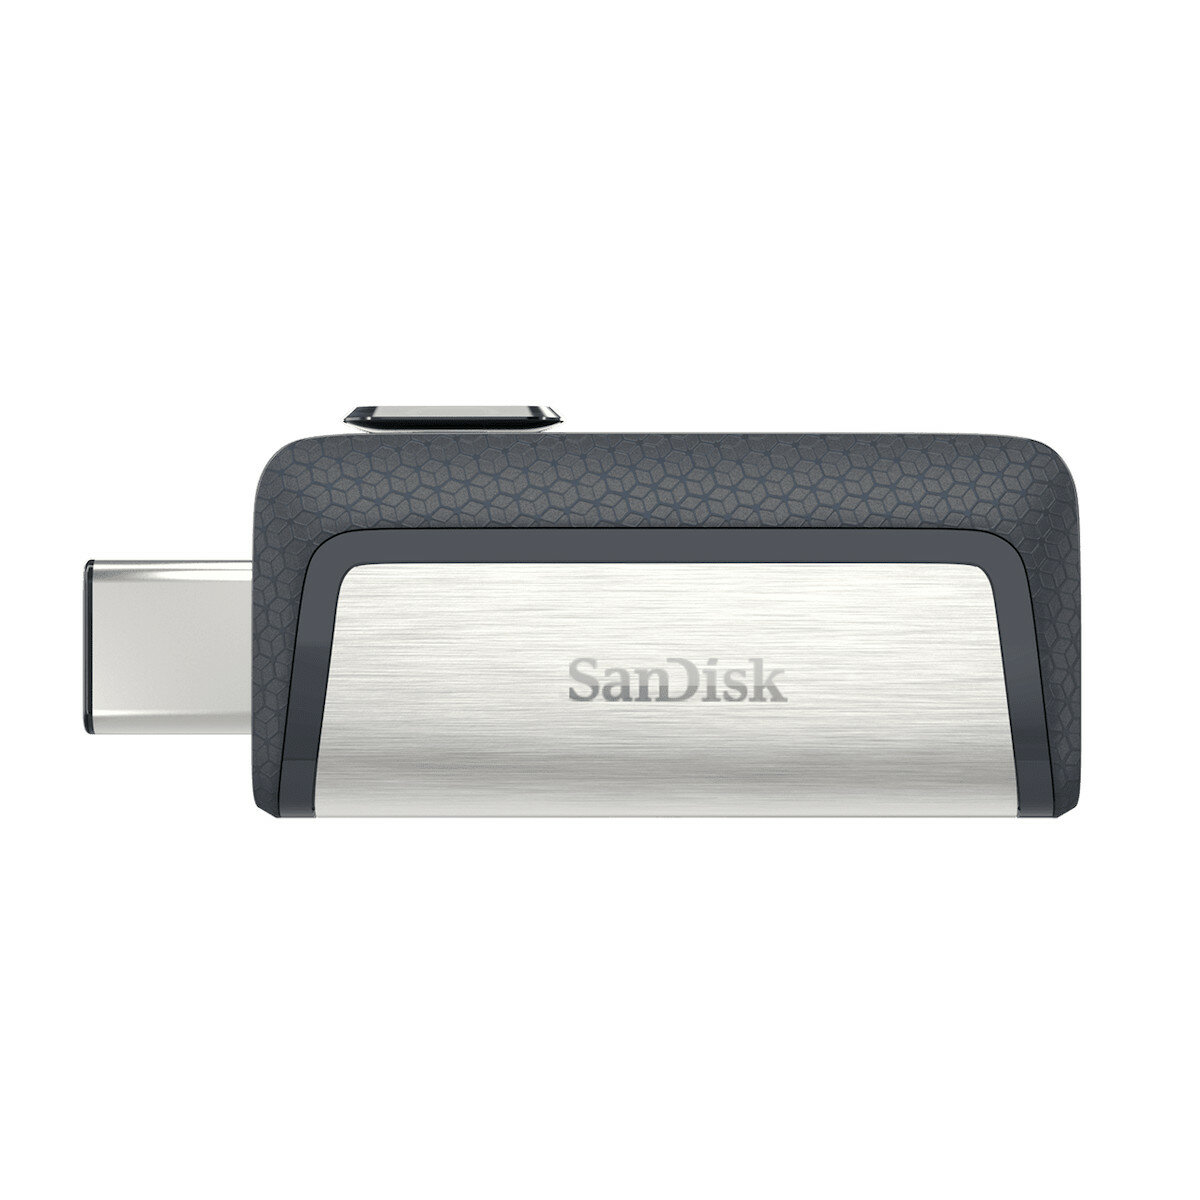 Pendrive SanDisk Ultra Dual Drive 256 GB widoczny frontem w wysuniętym złączem